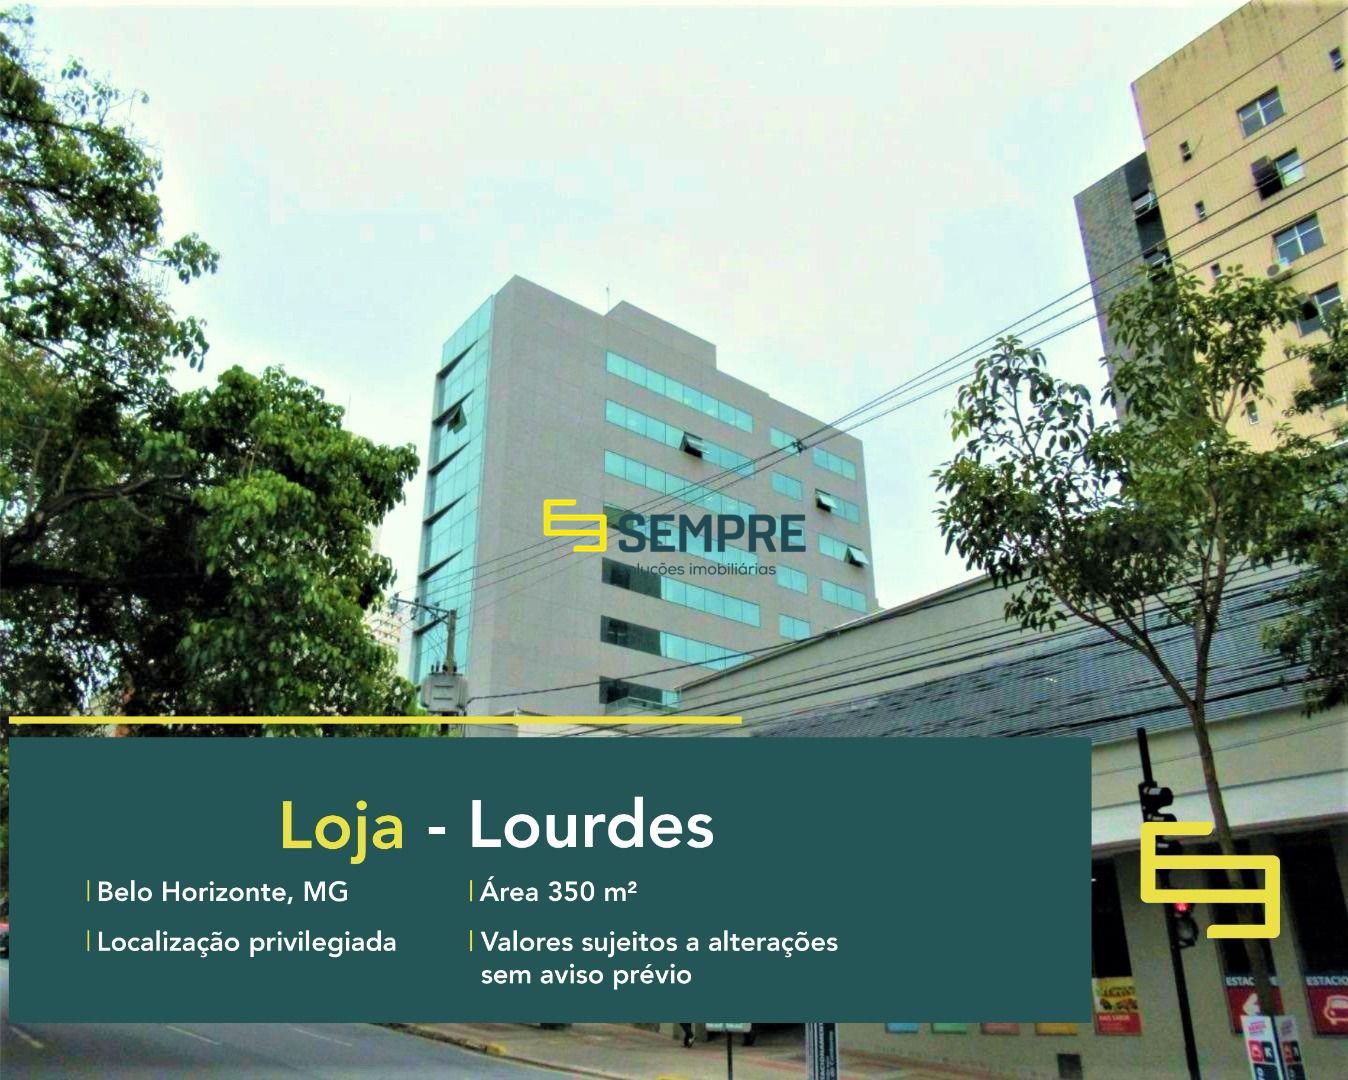 Loja para alugar no Lourdes em Belo Horizonte, em excelente localização. O estabelecimento comercial conta, sobretudo, com área de 350 m².